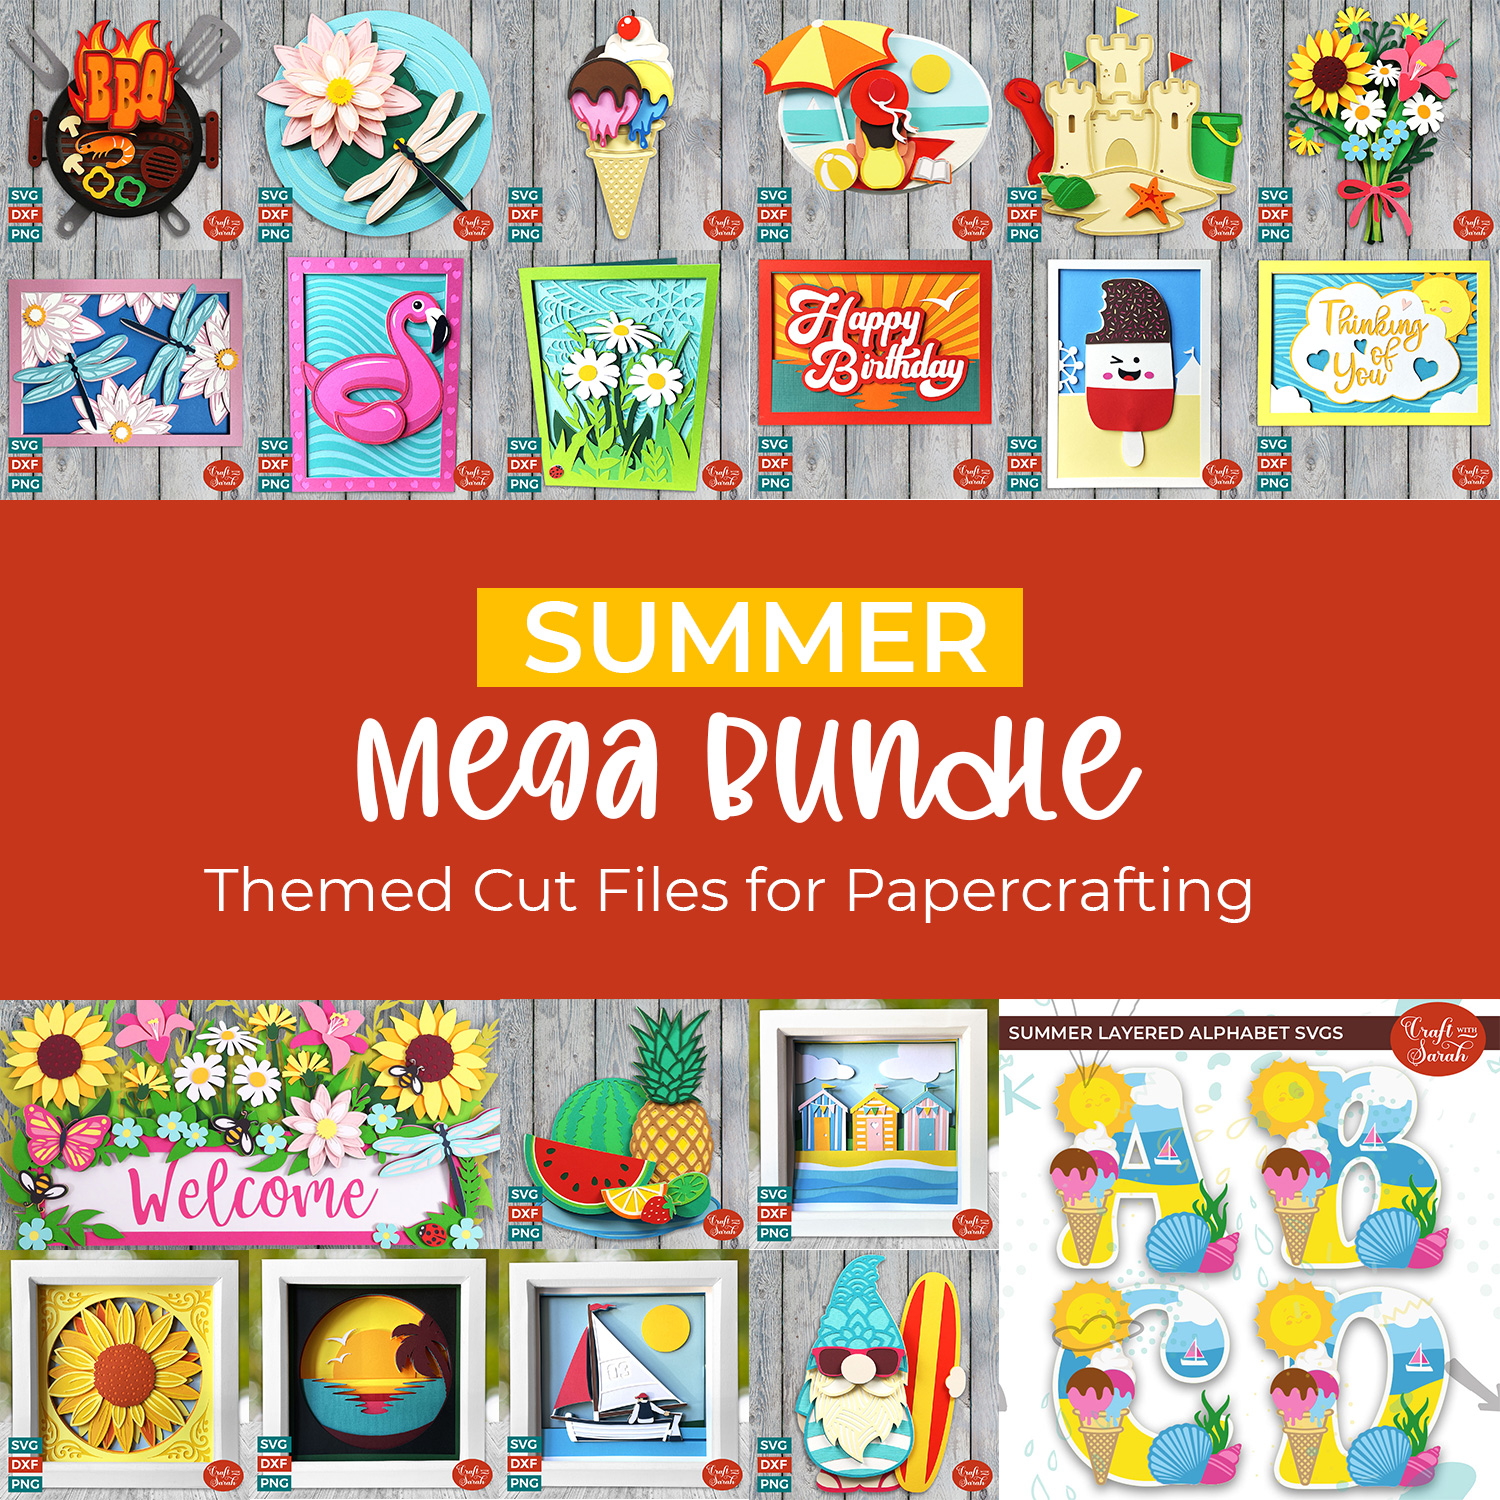 Summer mega bundle